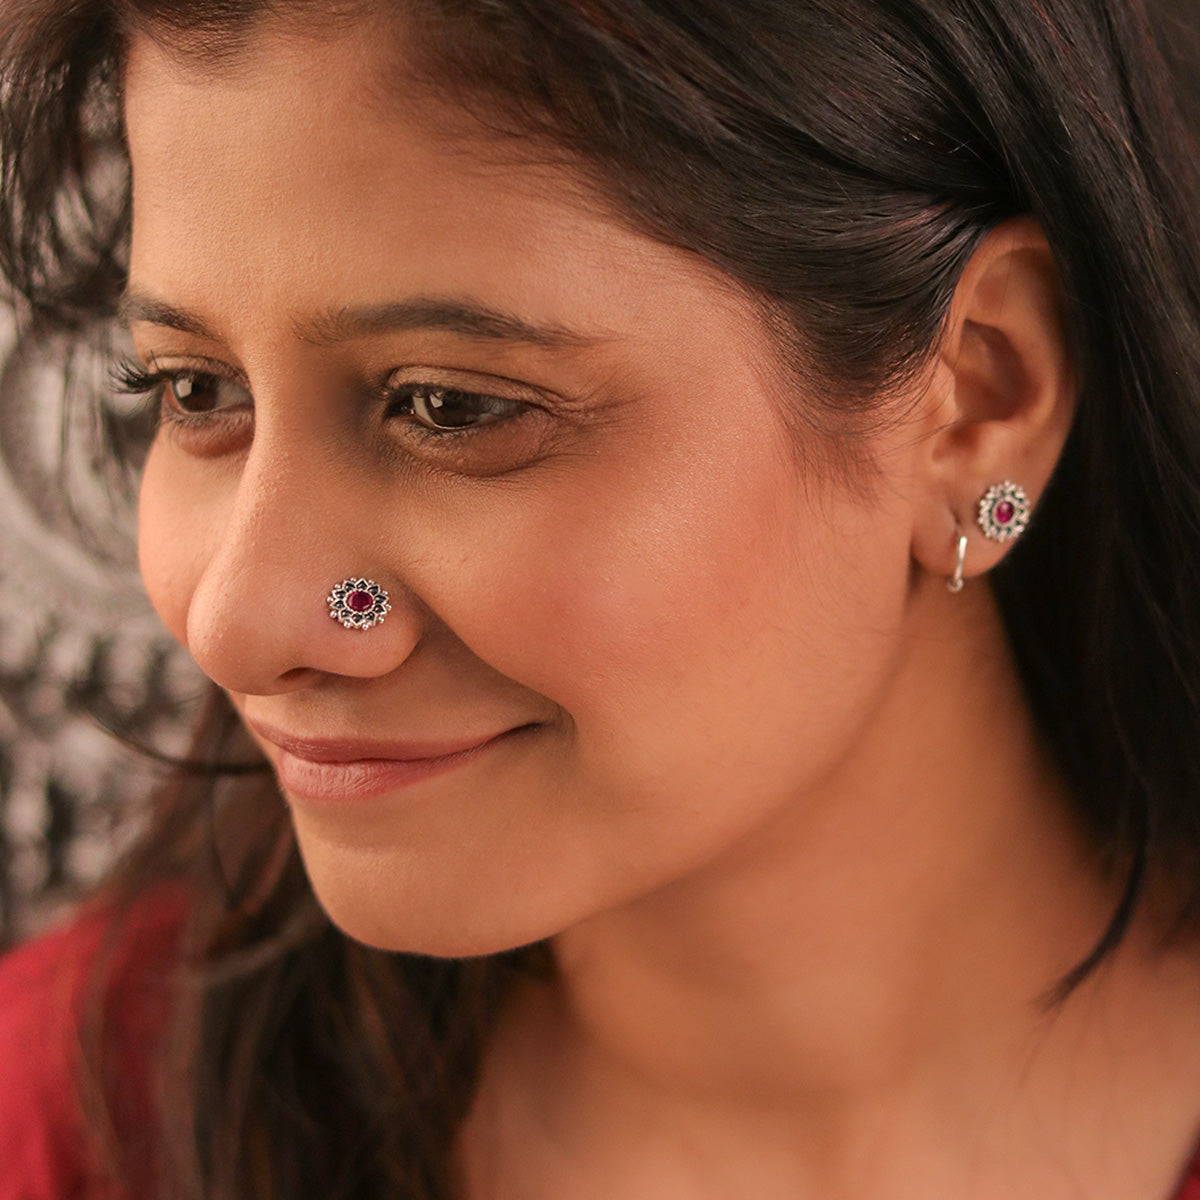 Mallika Silver Upperlobe Earrings by Moha